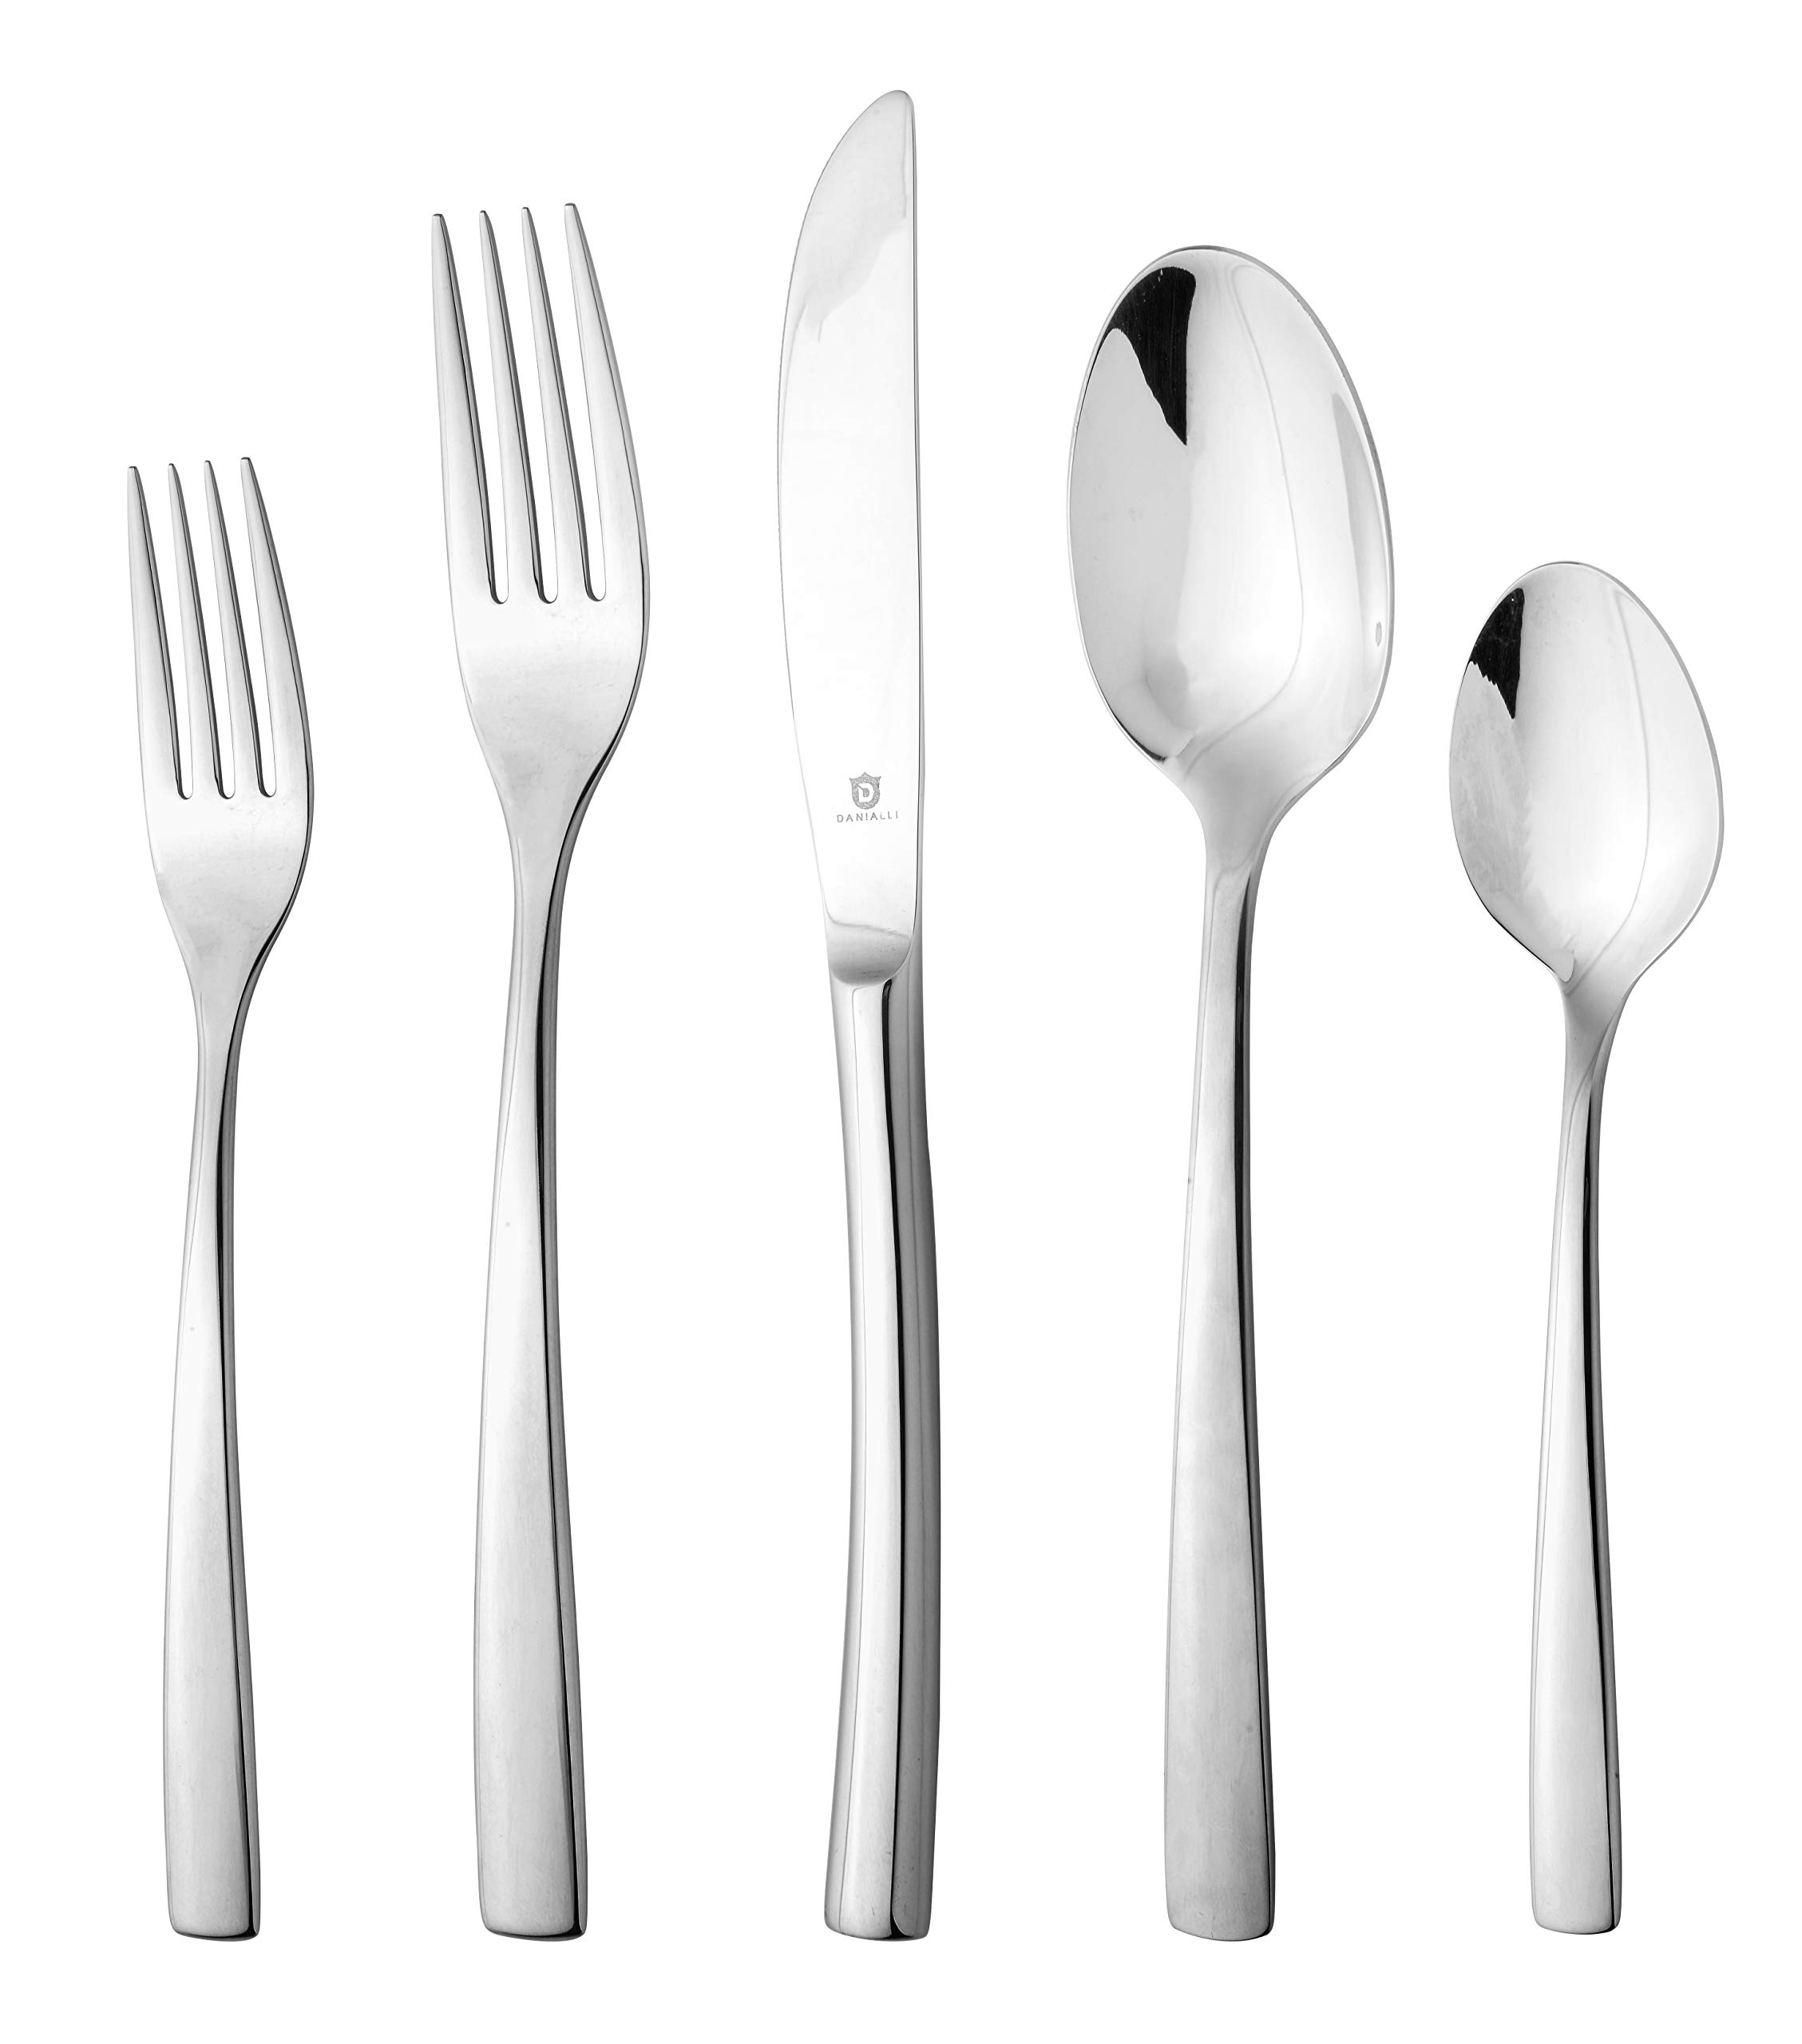 D DANIALLI DANIALLI 20 Piece Silverware Set For 4, 18 10 Stainless Steel Silverware Set, Modern Sleek Flatware Set, Include Knife/Fork/Spoo